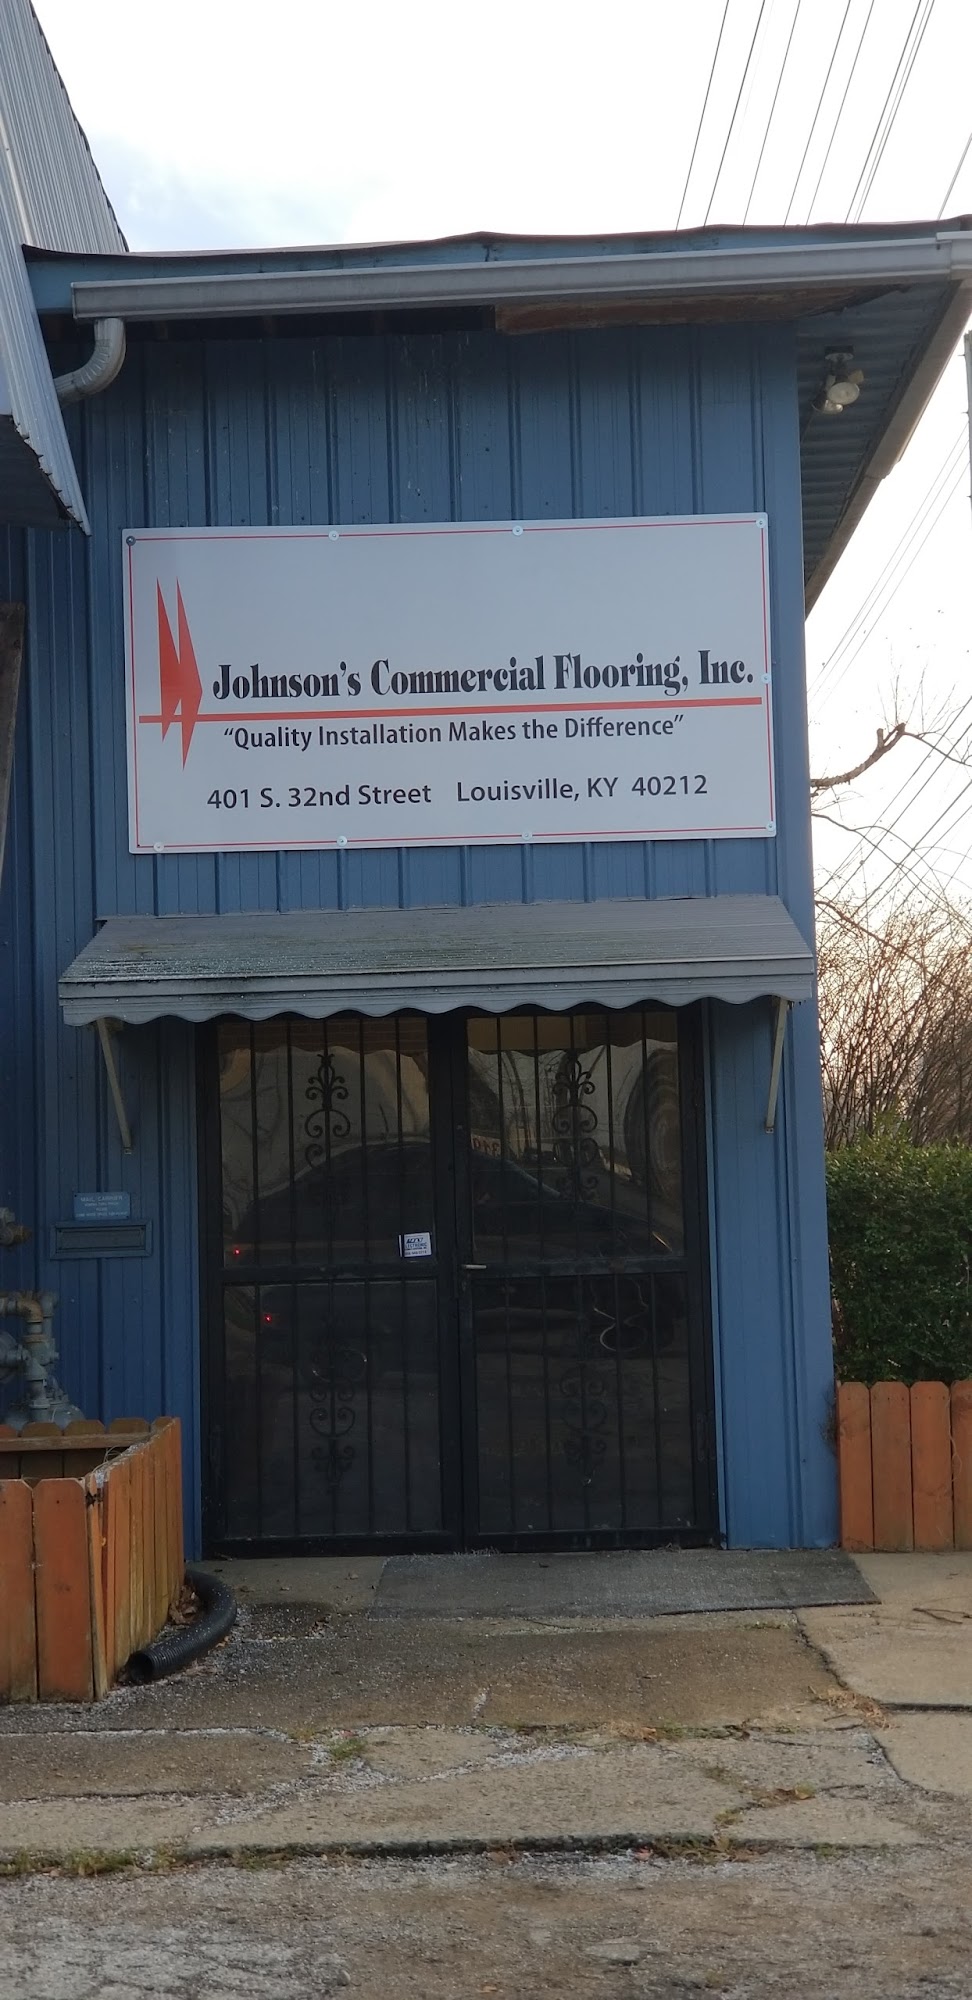 Johnson's Commercial Flooring